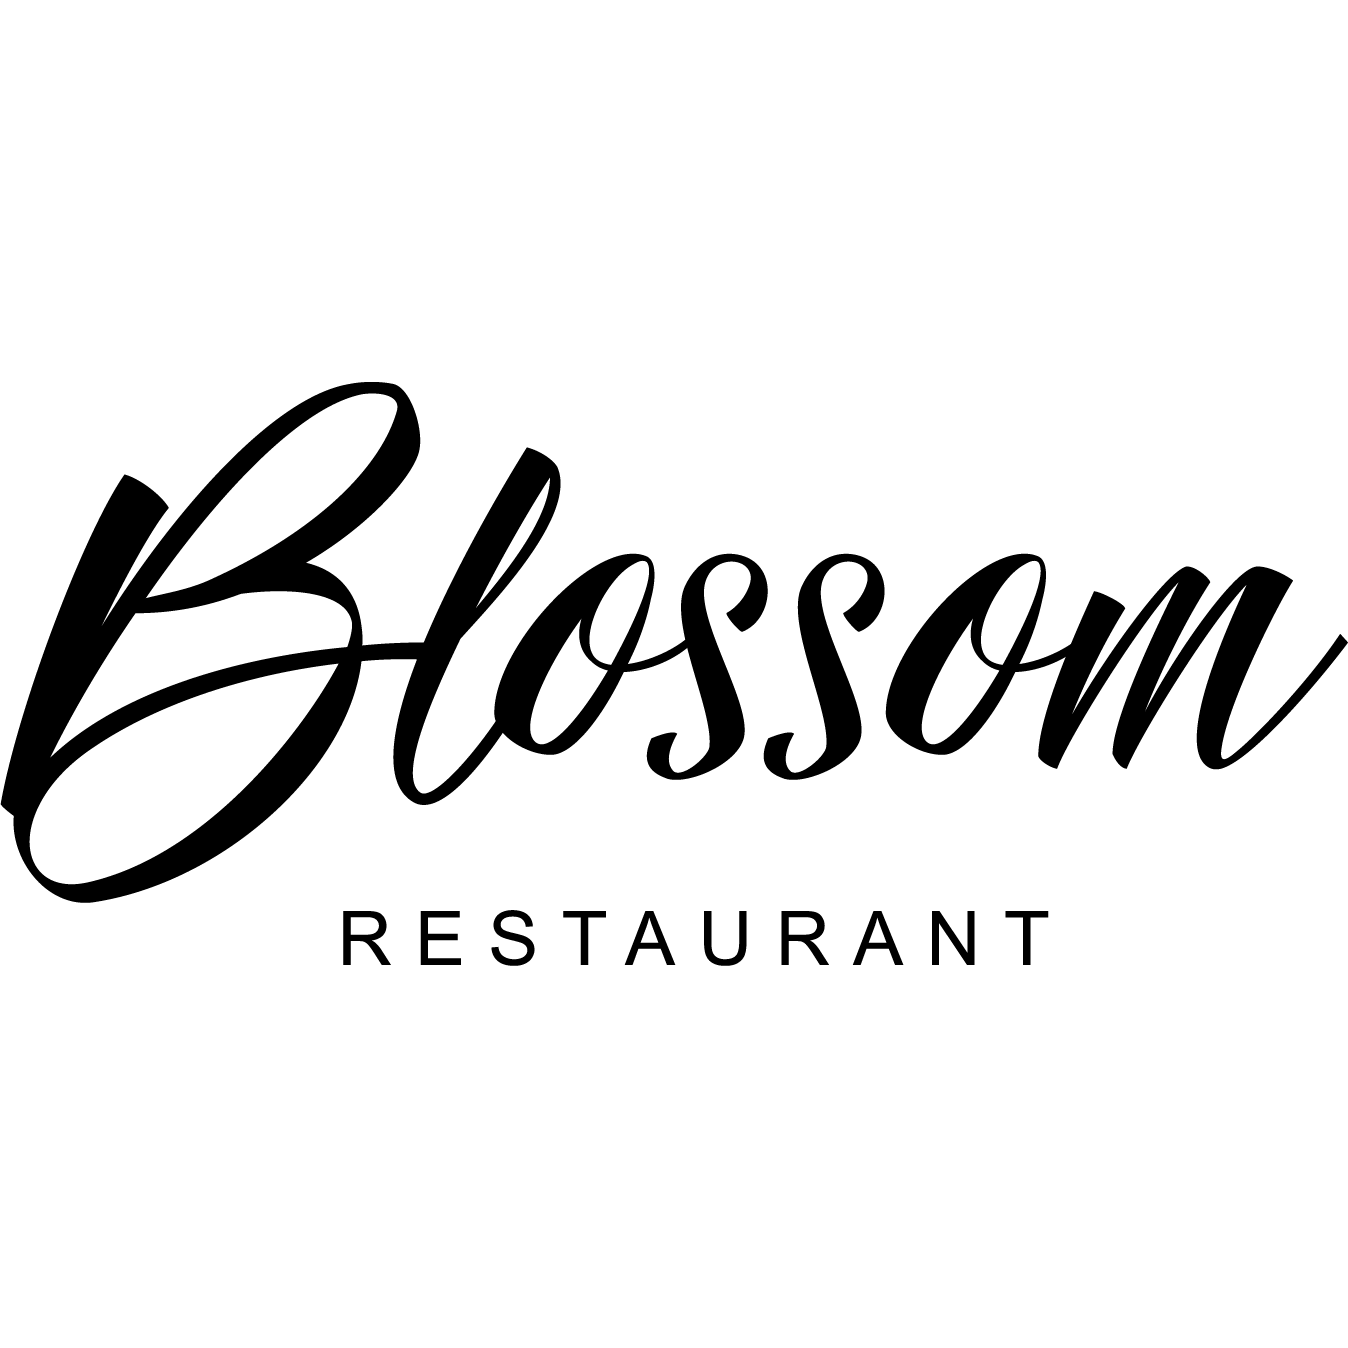 Restaurant Blossom Blossom Paris 01 44 94 14 24